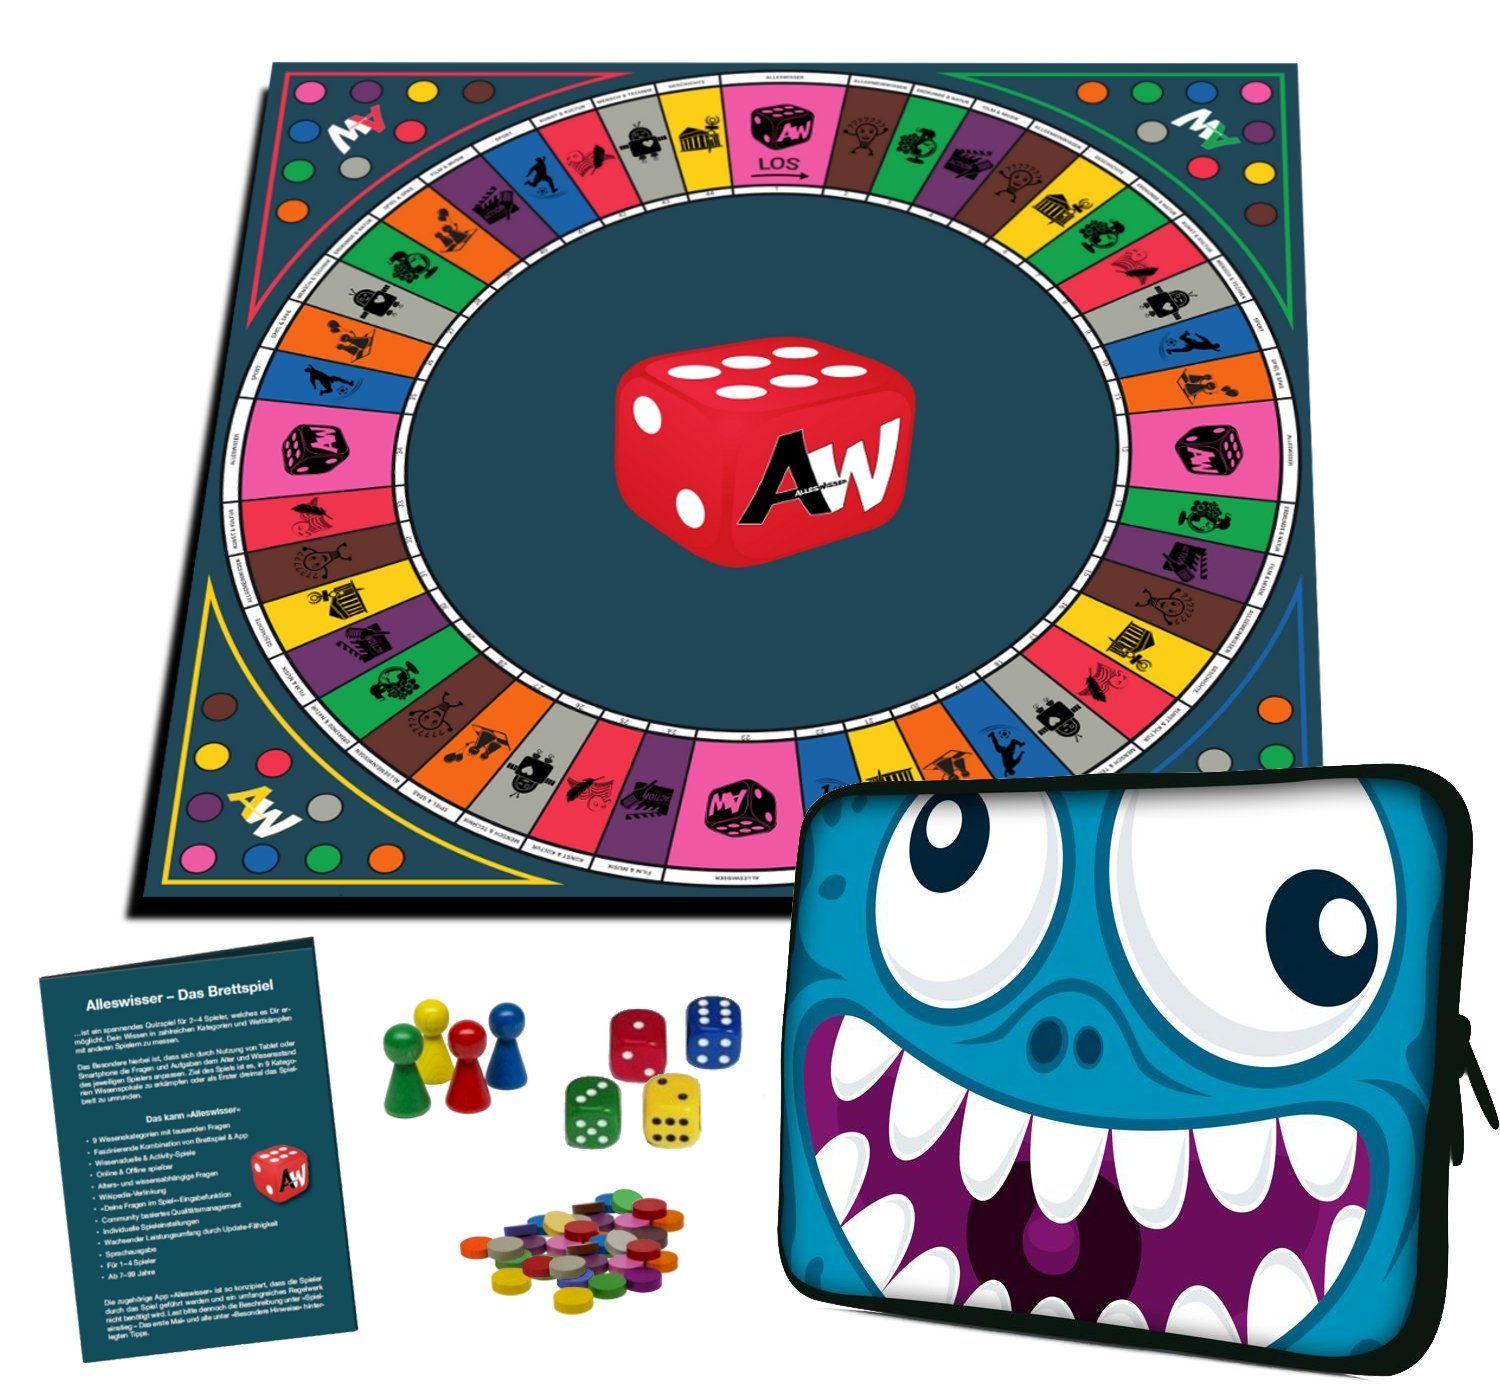 Android Wissens-, Das Brettspiel Familienspiel & App iOS Quiz-, ALLESWISSER Spiel, für - Interaktives mit Comic Alleswisser